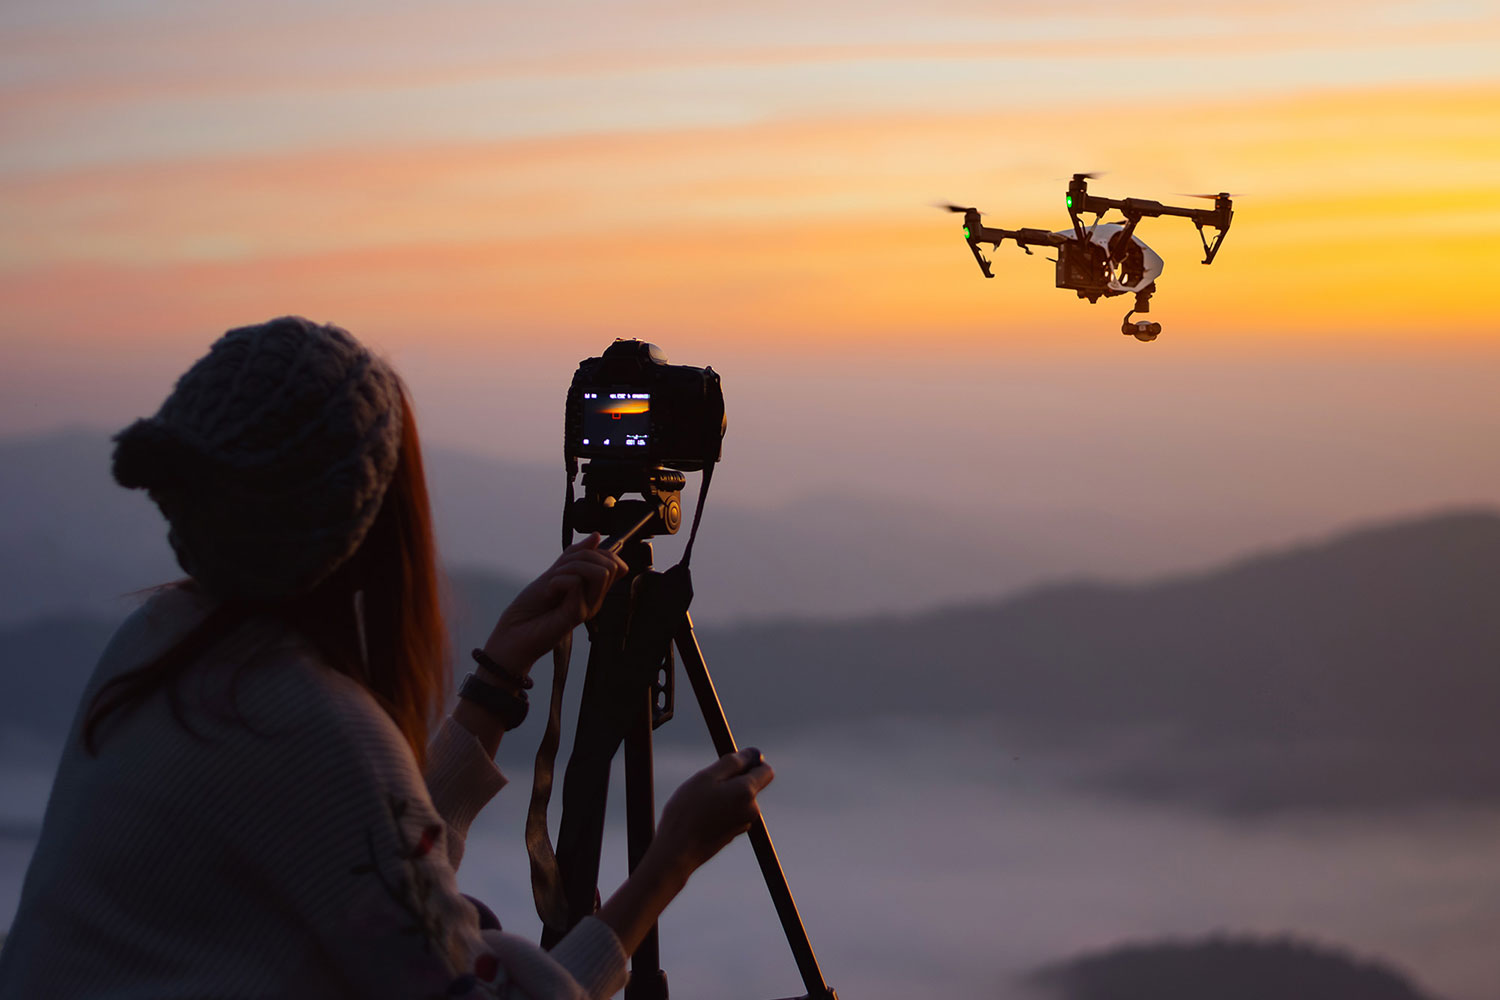 sandisk camera capturing drone flying